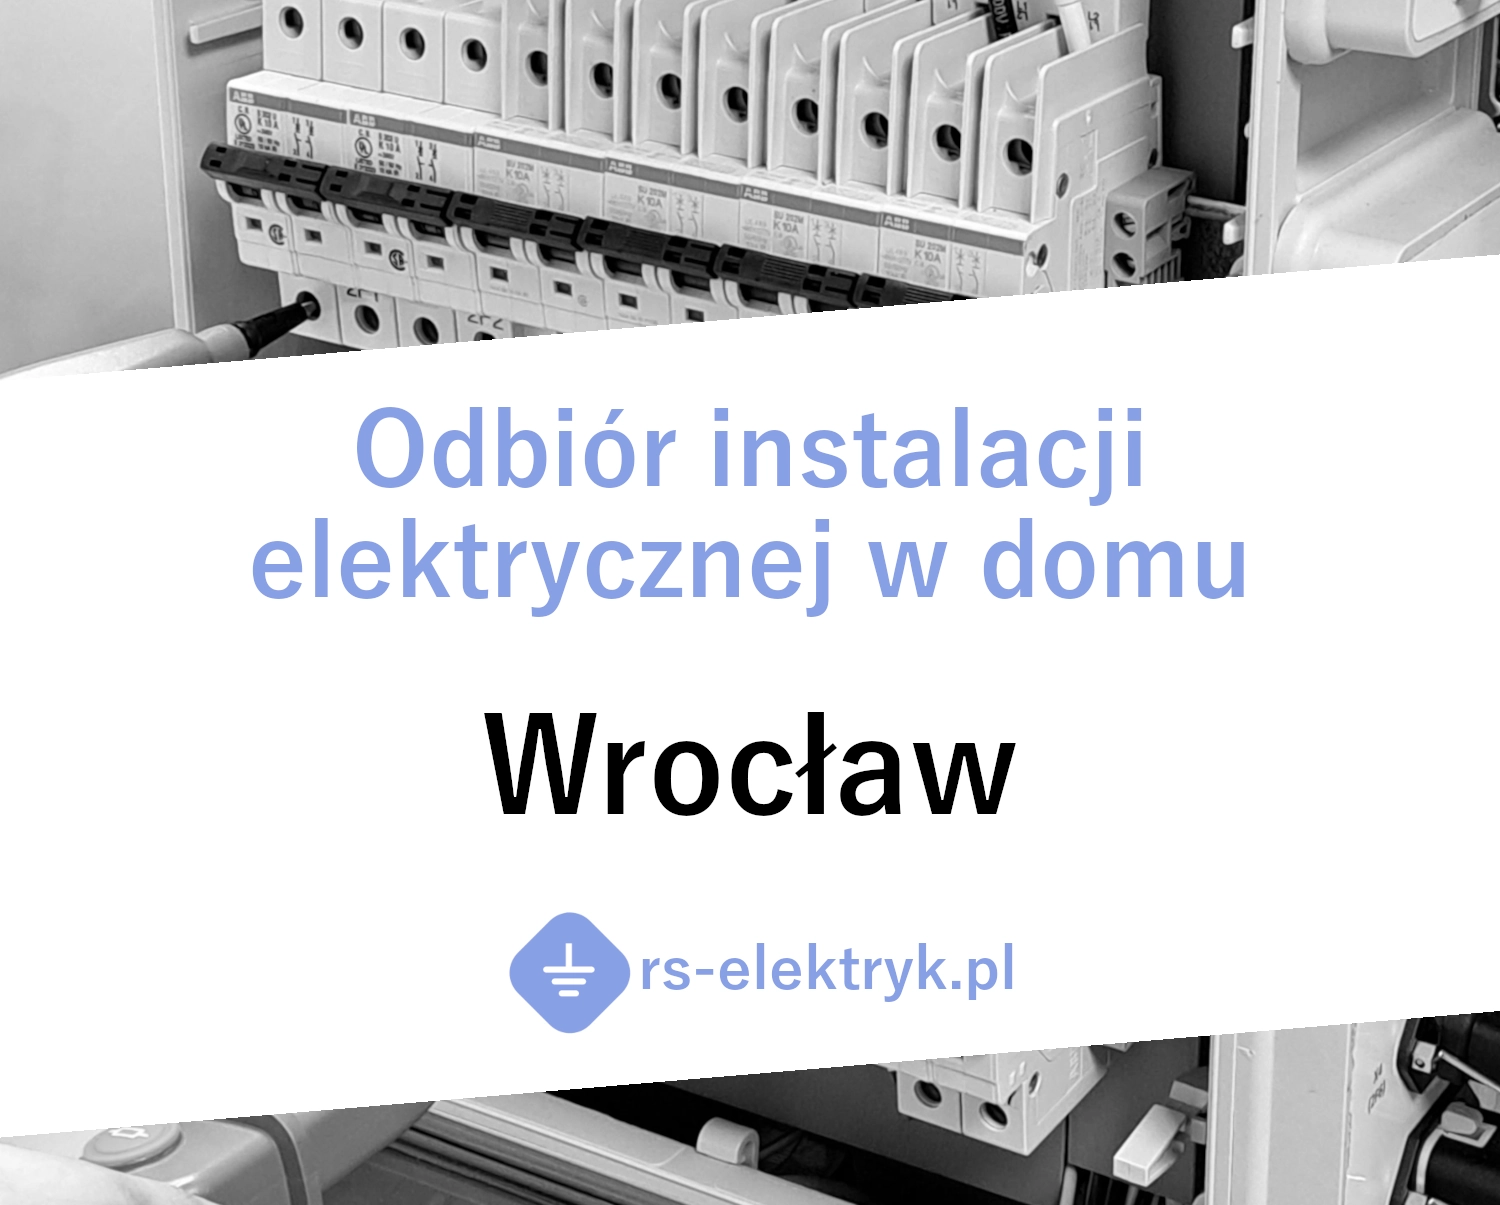 Odbiór instalacji elektrycznej w domu Wrocław